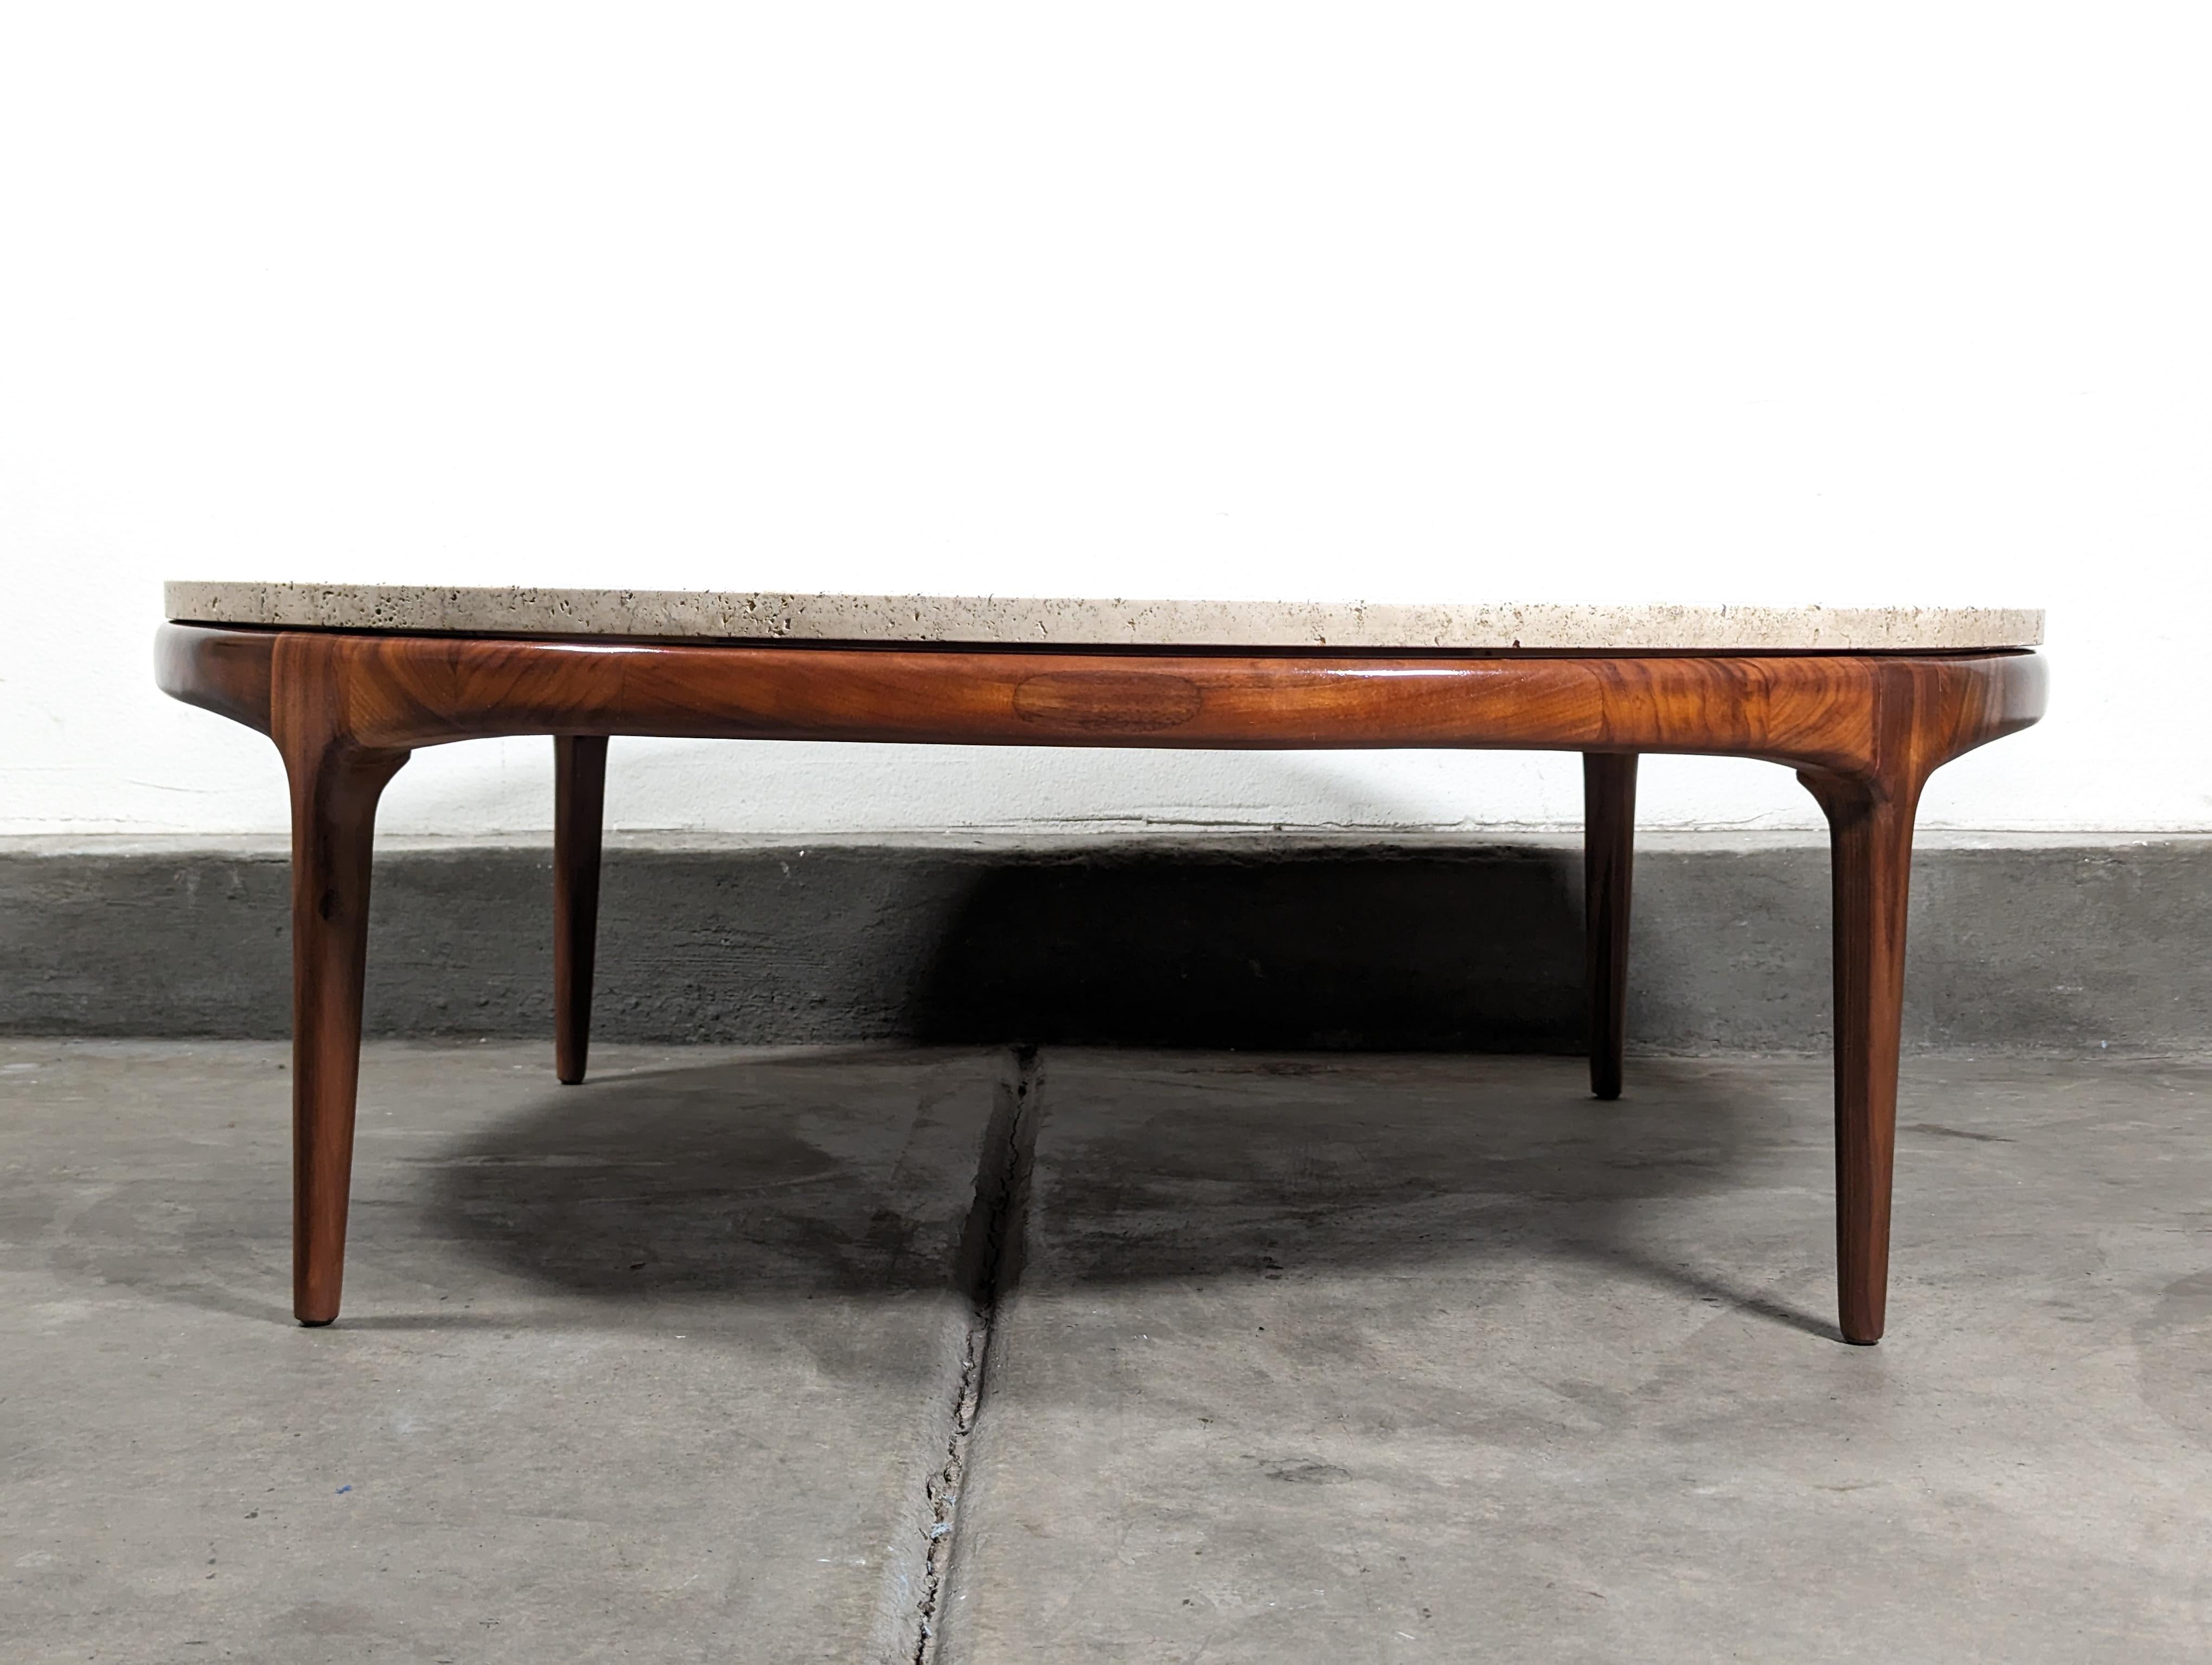 Nous vous présentons une pièce exquise de l'histoire du design - une table basse vintage moderne du milieu du siècle, fabriquée dans les années 1960 par le célèbre fabricant Lane Furniture. Cette pièce intemporelle est conçue pour durer, avec une